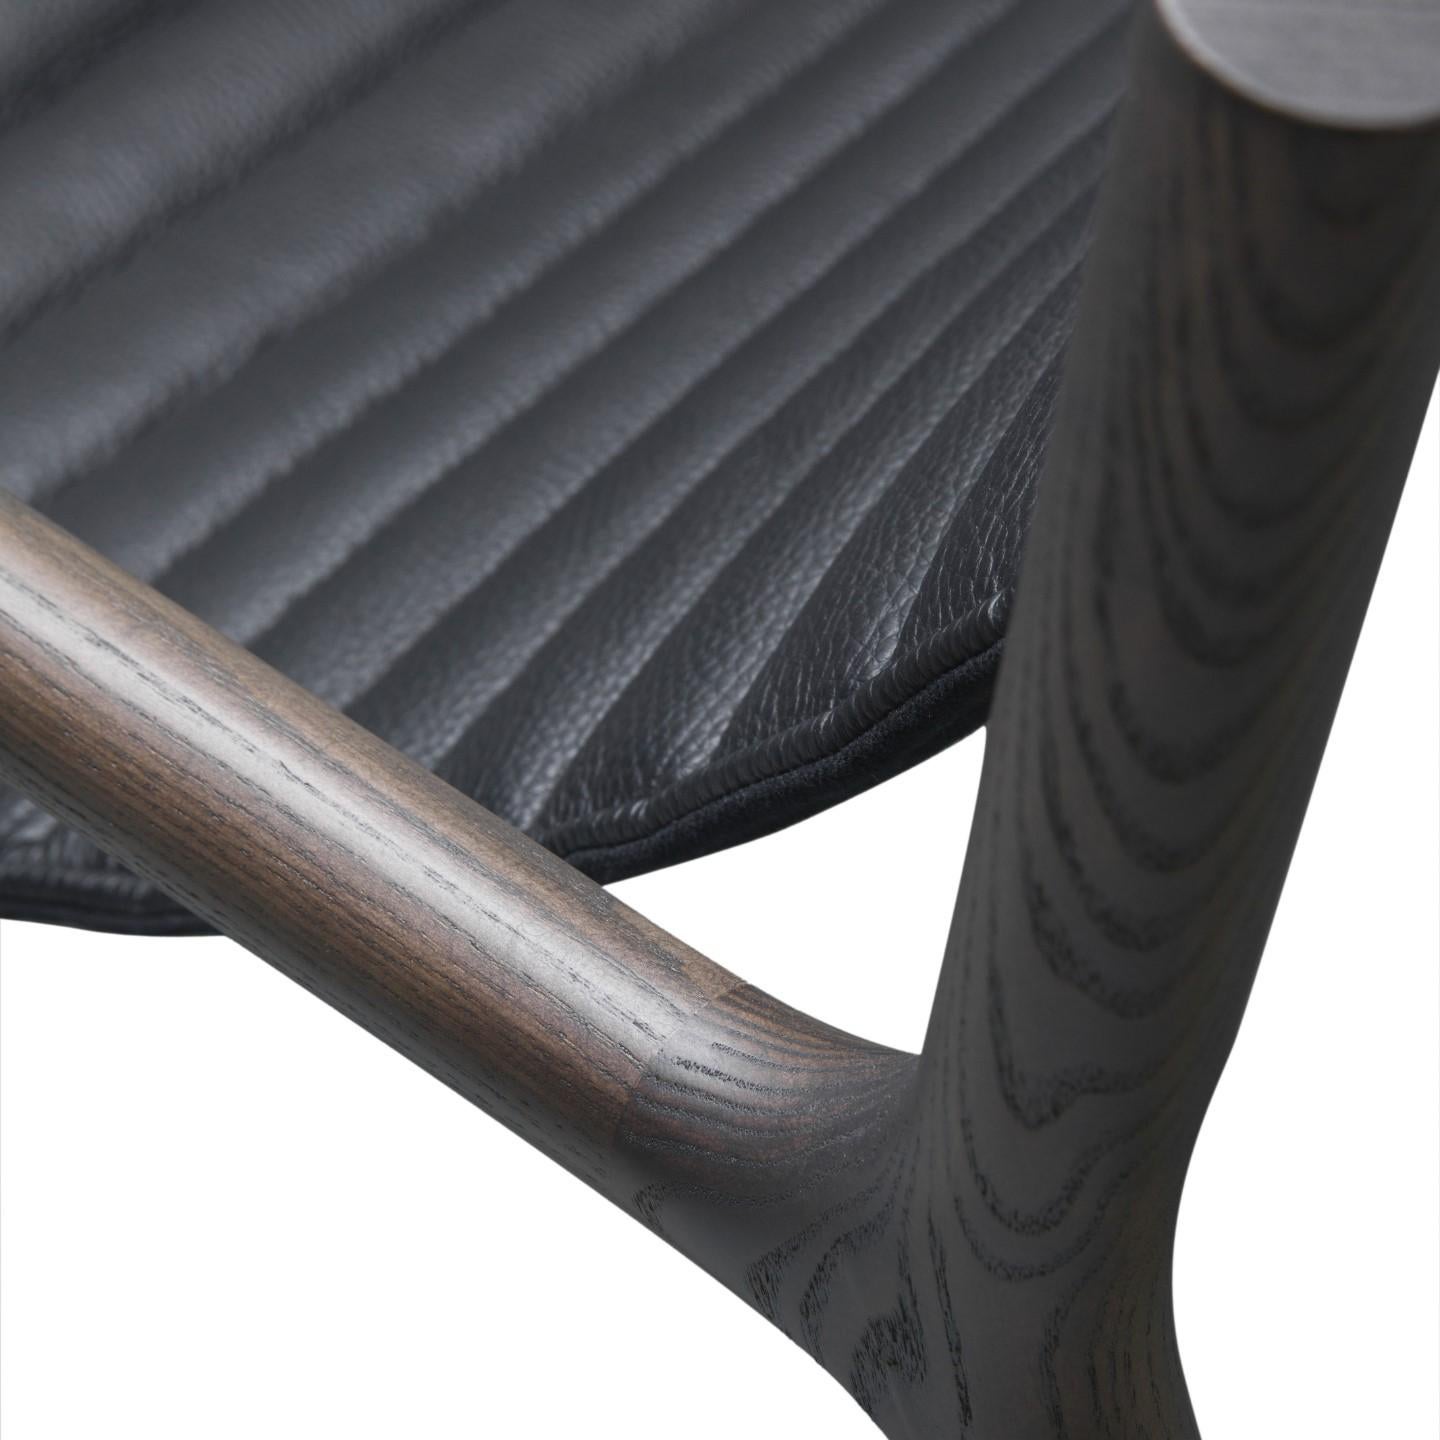 Niedriger Sessel Joyce im zeitgenössischen Stil aus Eschenholz mit ledergetuftetem Sitz und Messingspitzen.
Entworfen von Libero Rutilo.
Abmessungen: L 69, B 82, H 69 cm.